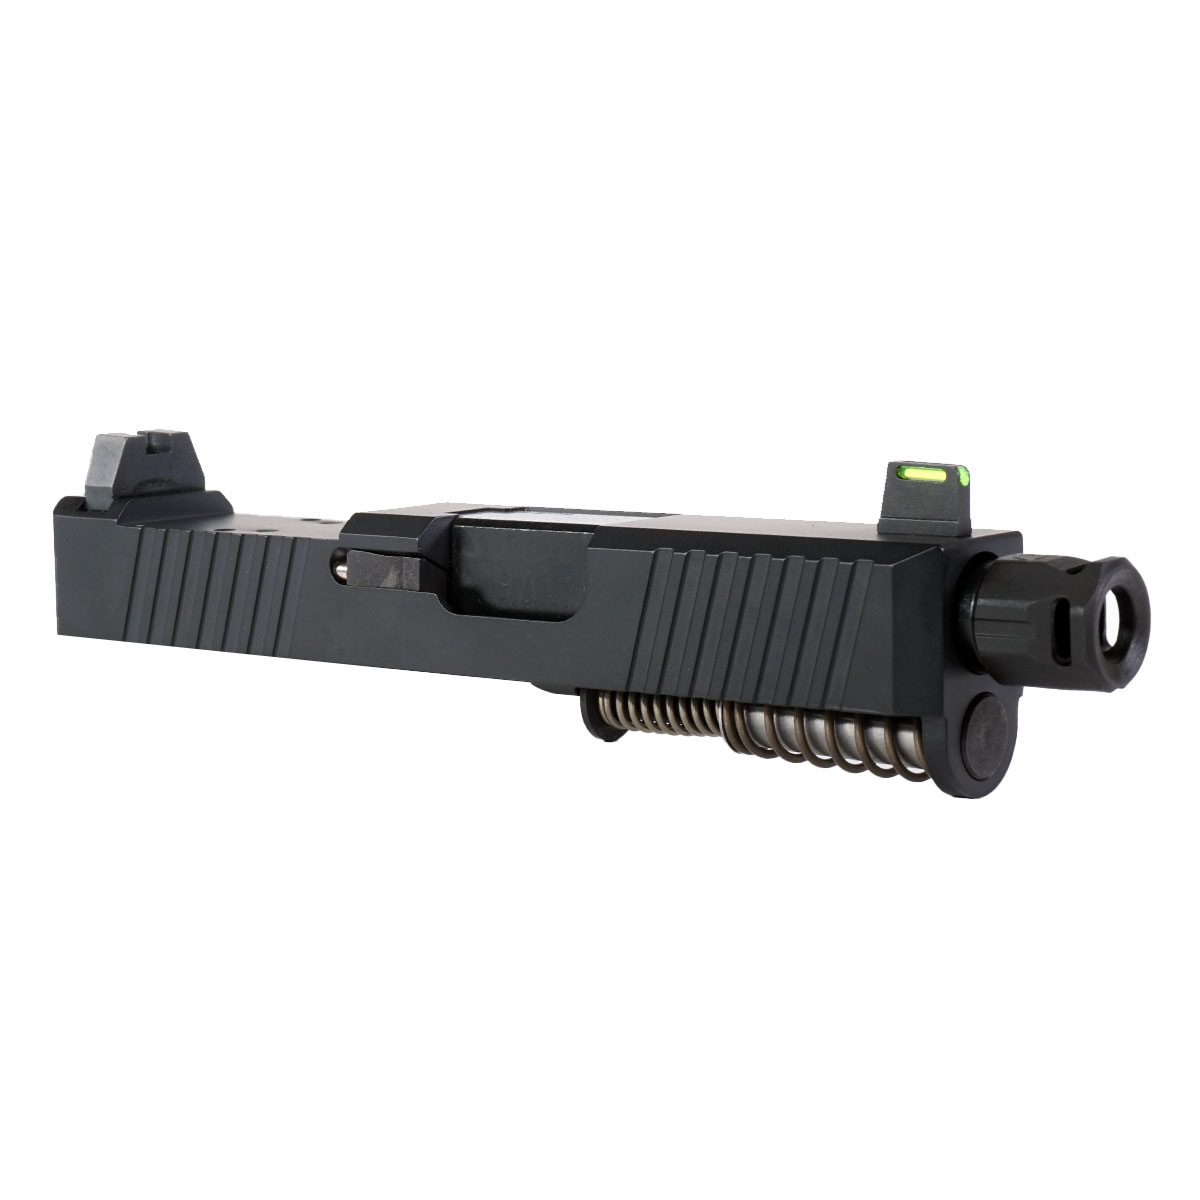 OTD 'Bad Company' 9mm Complete Slide Kit - Glock 26 Gen 1-3 Compatible